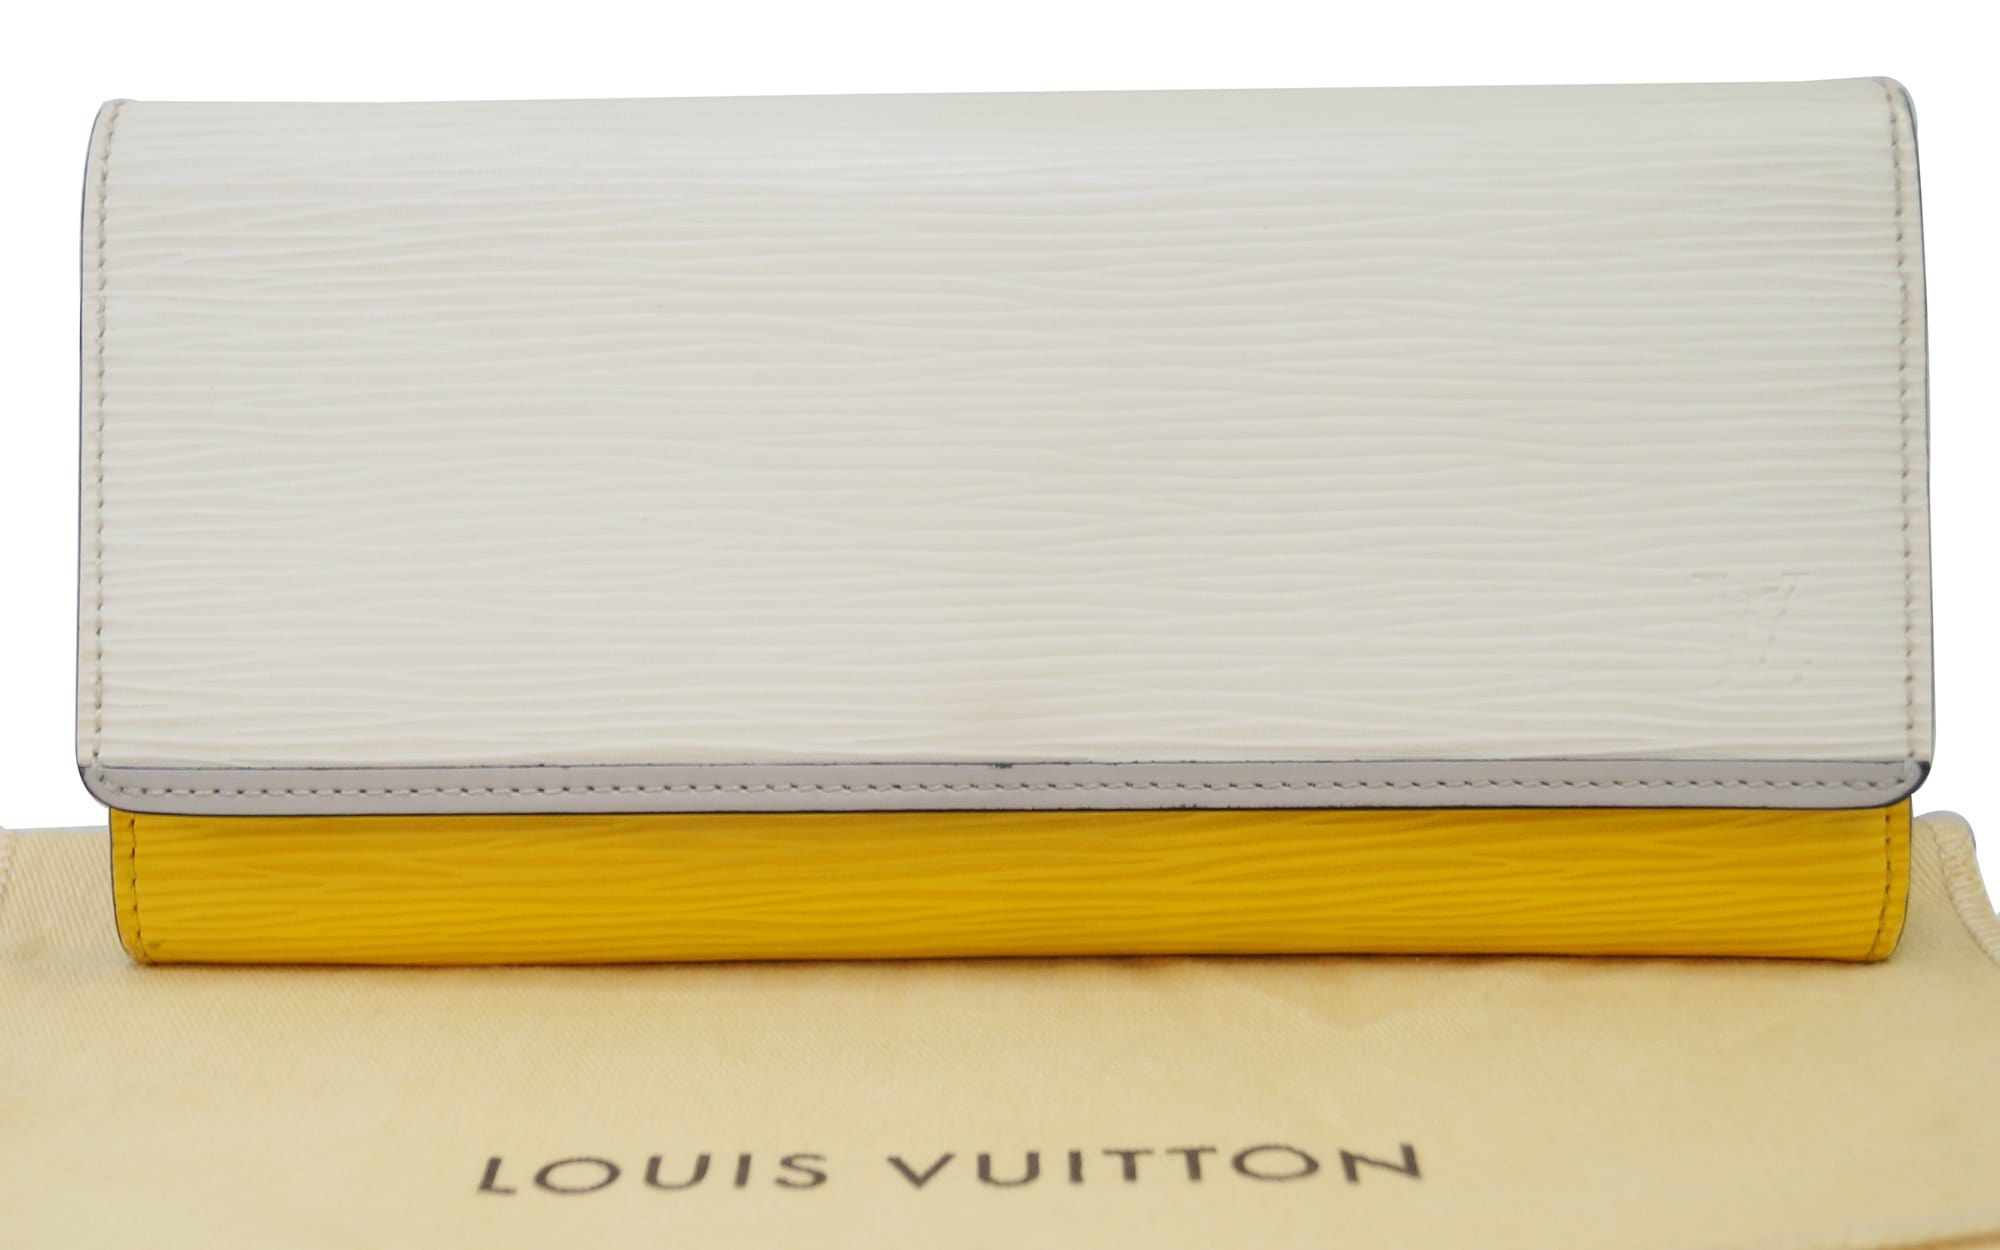 Louis Vuitton Tricolor Prune Electric Epi Flore Wallet Long Sarah Flap  219lvs210